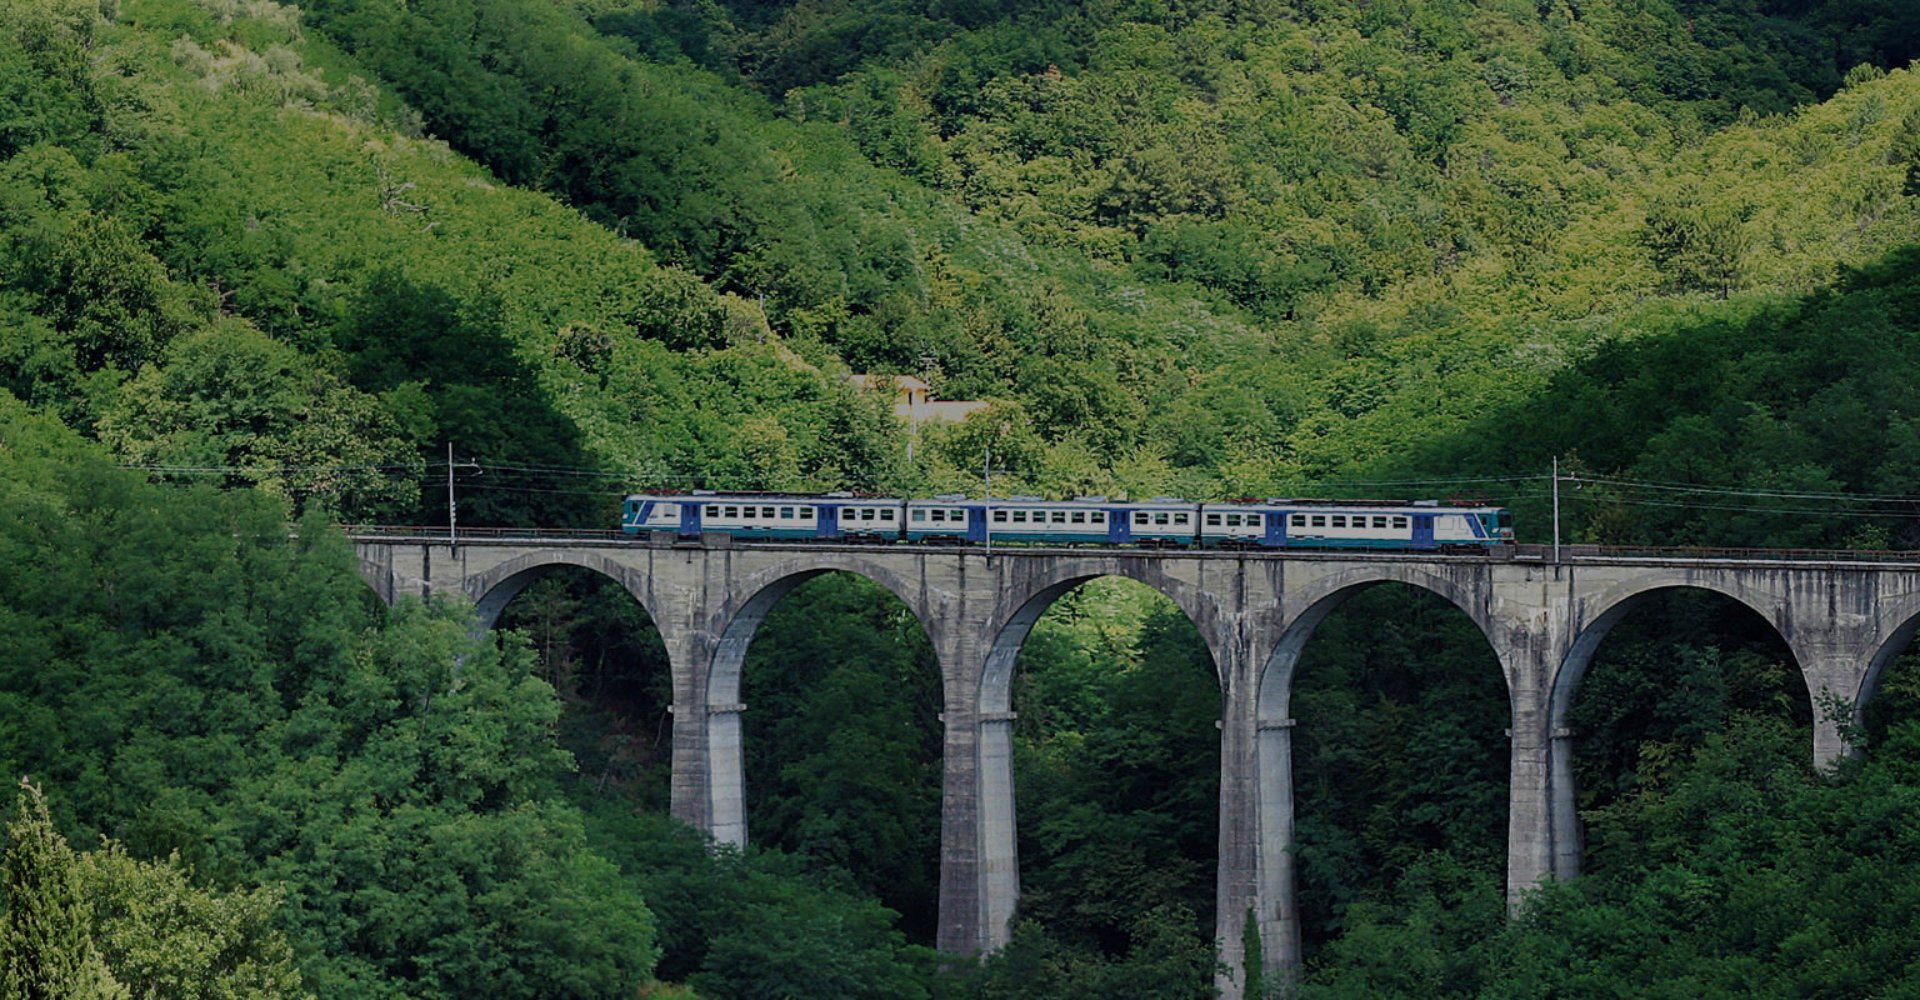 Le chemin de fer touristique Porrettana Express dans les montagnes de Pistoia